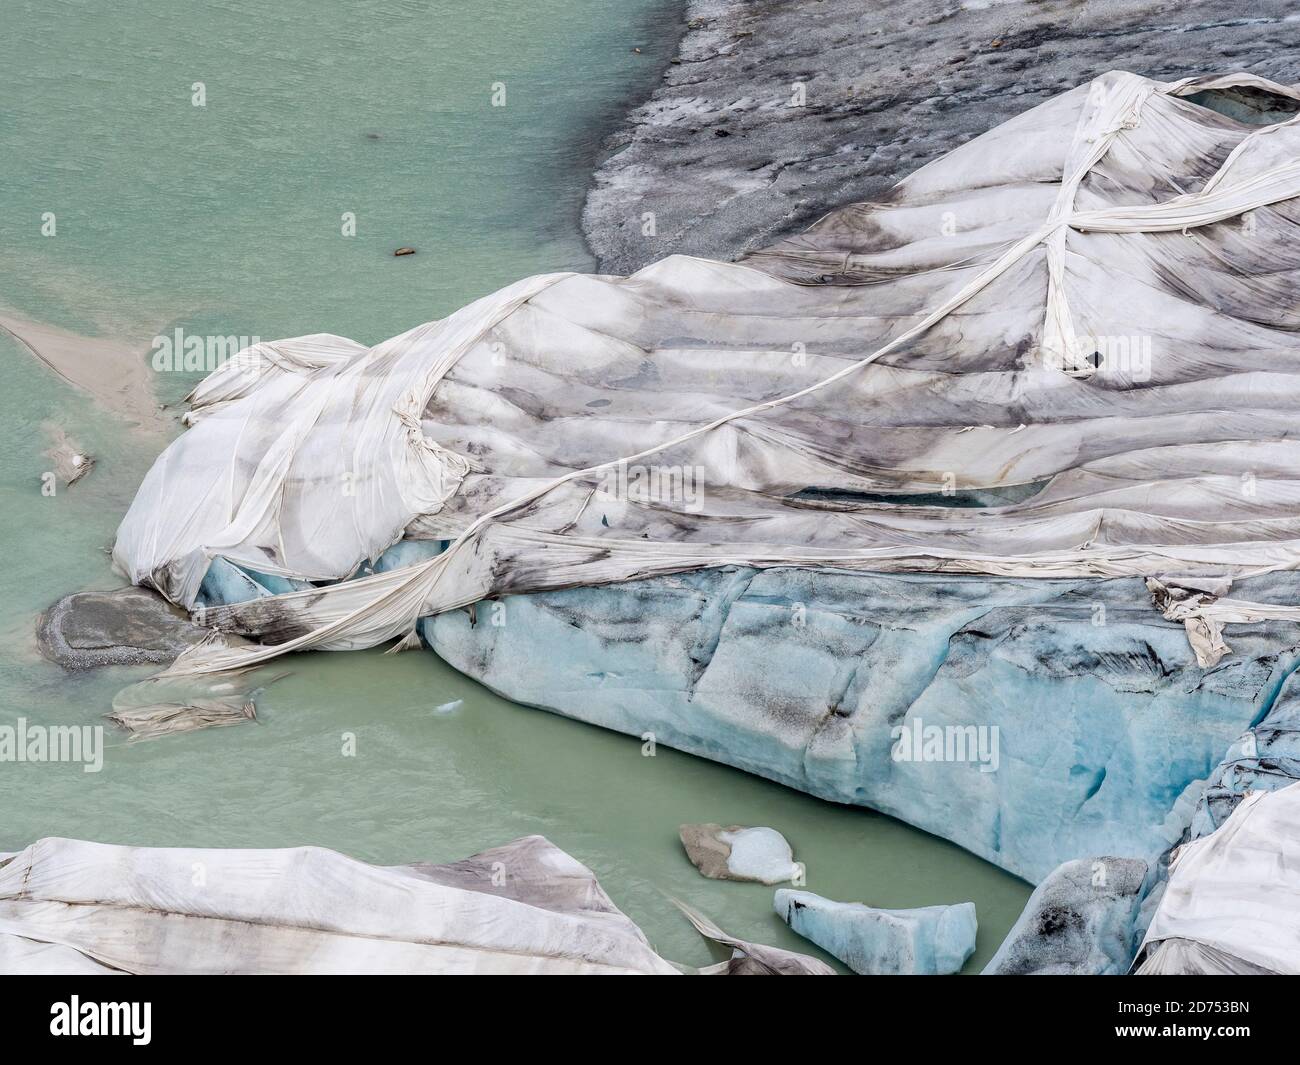 Ghiacciaio del Rodano ricoperto di fogli per proteggere il ghiaccio dalla fusione sopra la grotta del ghiacciaio, Belvedere, Svizzera Foto Stock